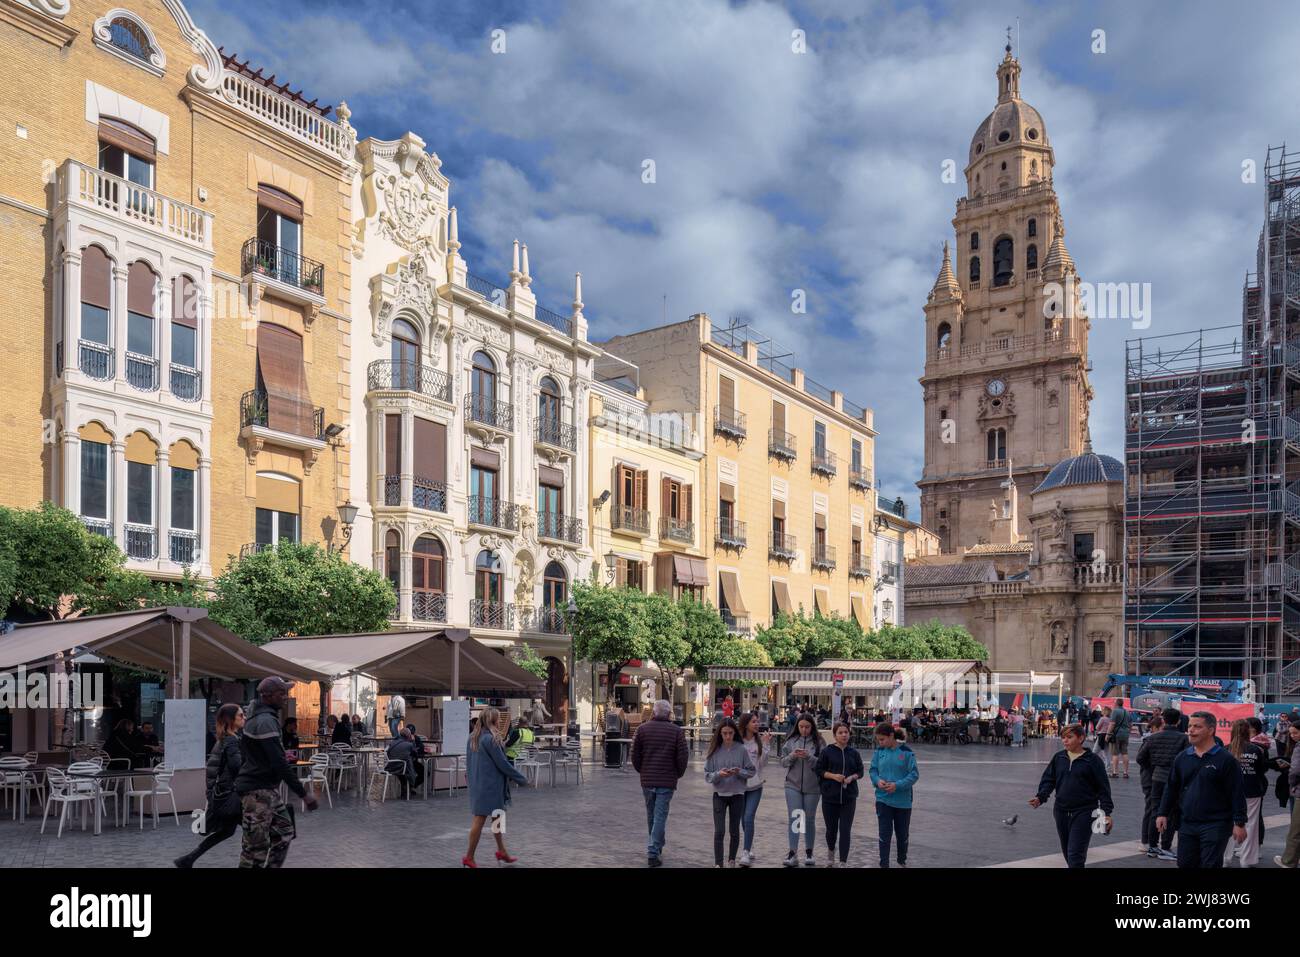 Cardenal Belluga, la piazza pedonale conosciuta come Plaza Belluga o Plaza de la Catedral, lo spazio urbano e il centro turistico nella città vecchia di Murcia Foto Stock